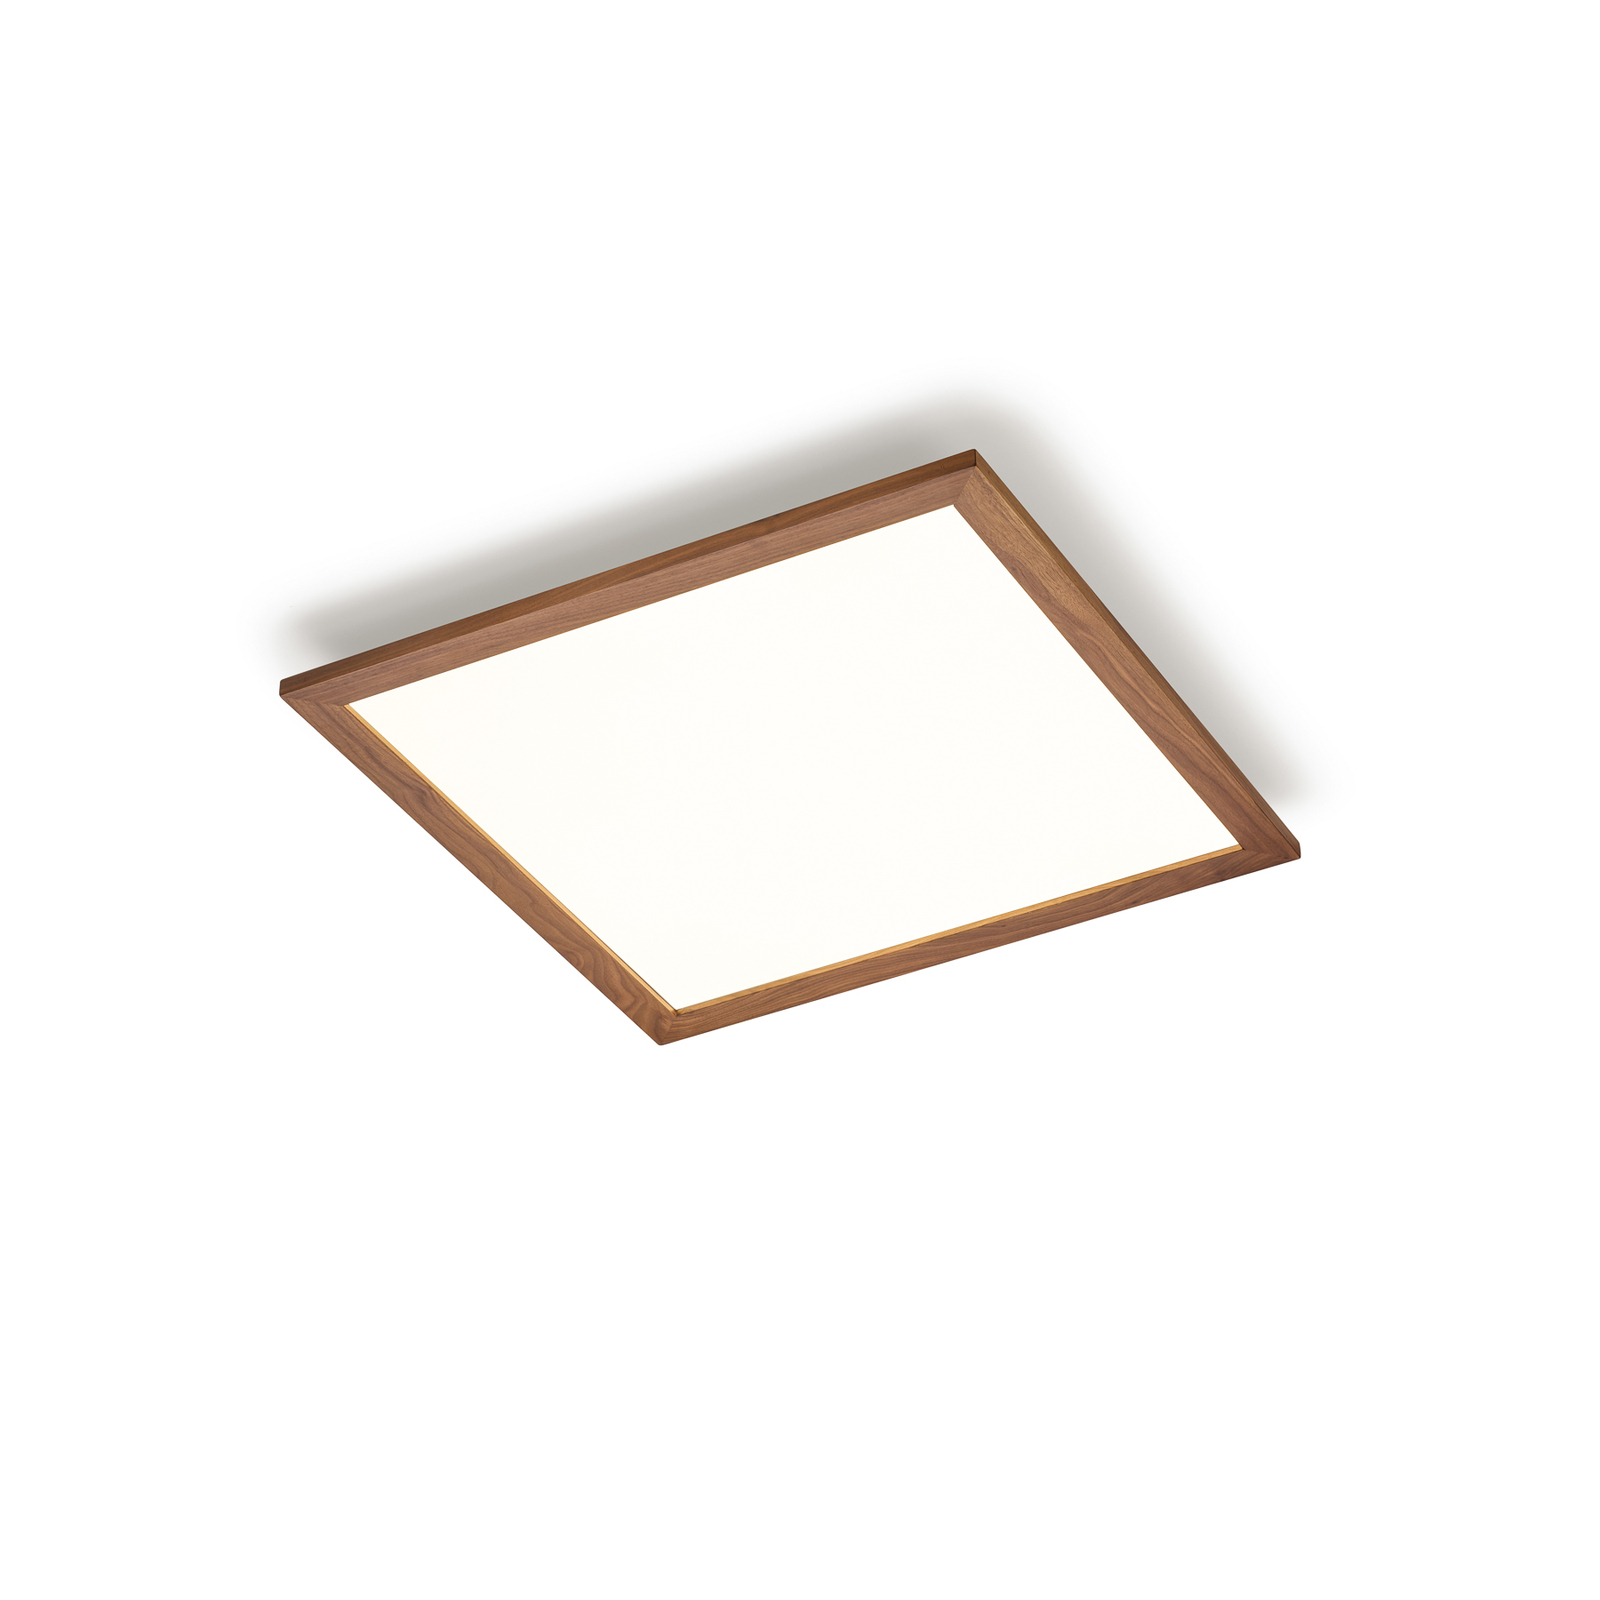 Quitani Aurinor LED panel, orech, 68 cm